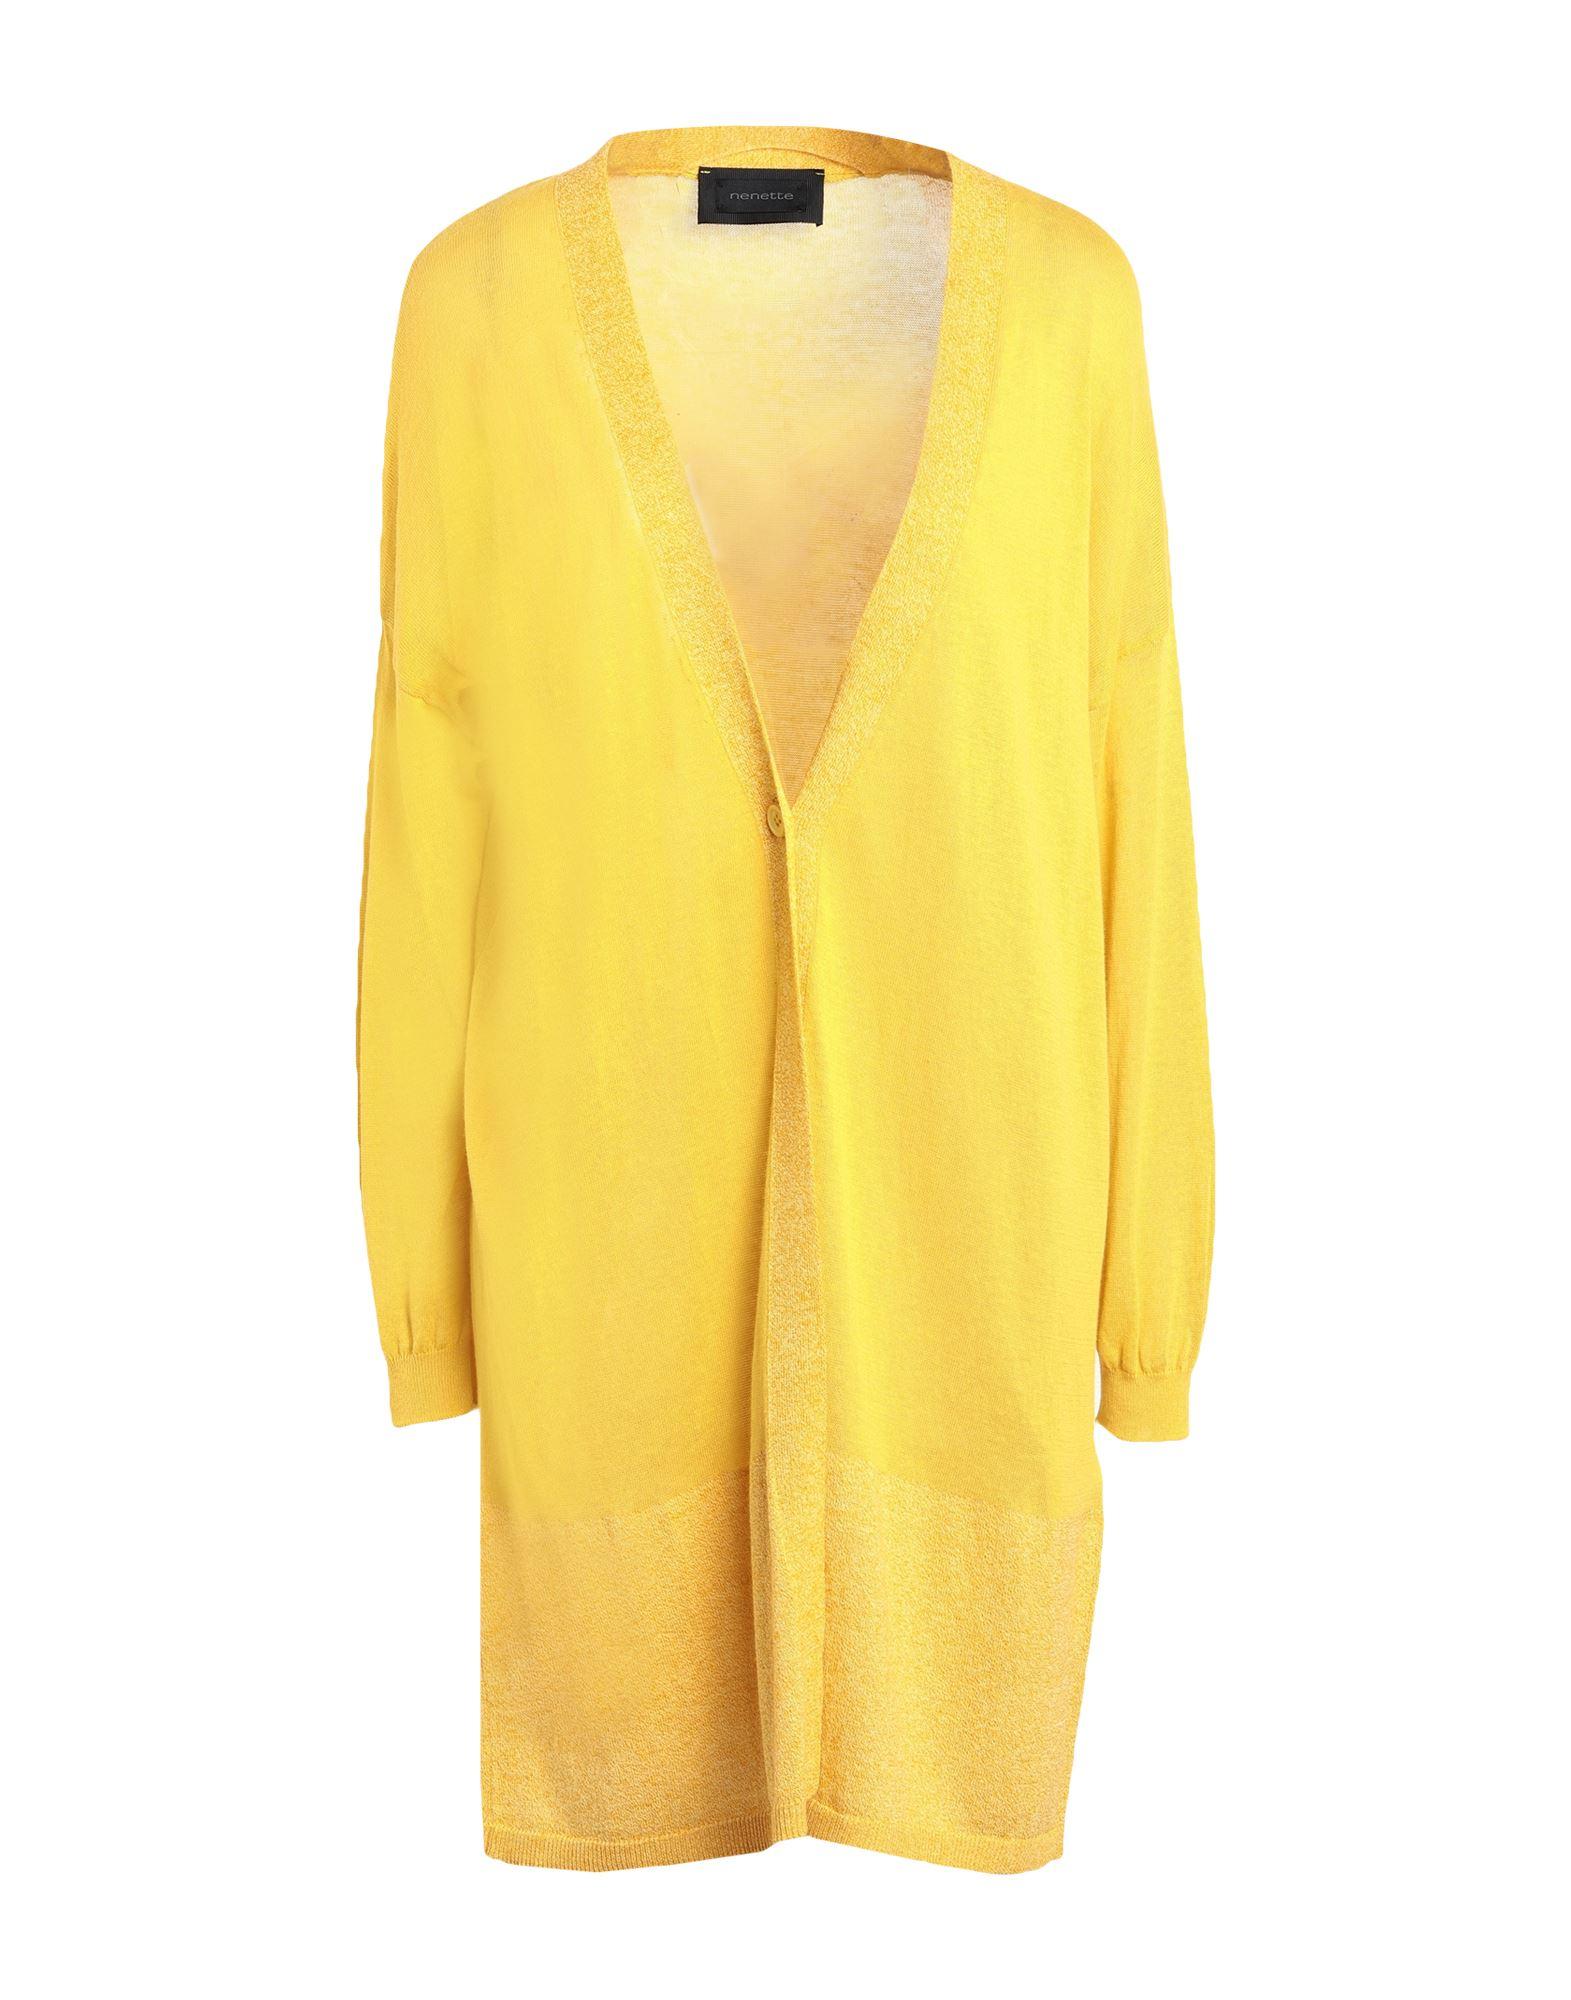 Nenette Cardigan in Yellow | Lyst